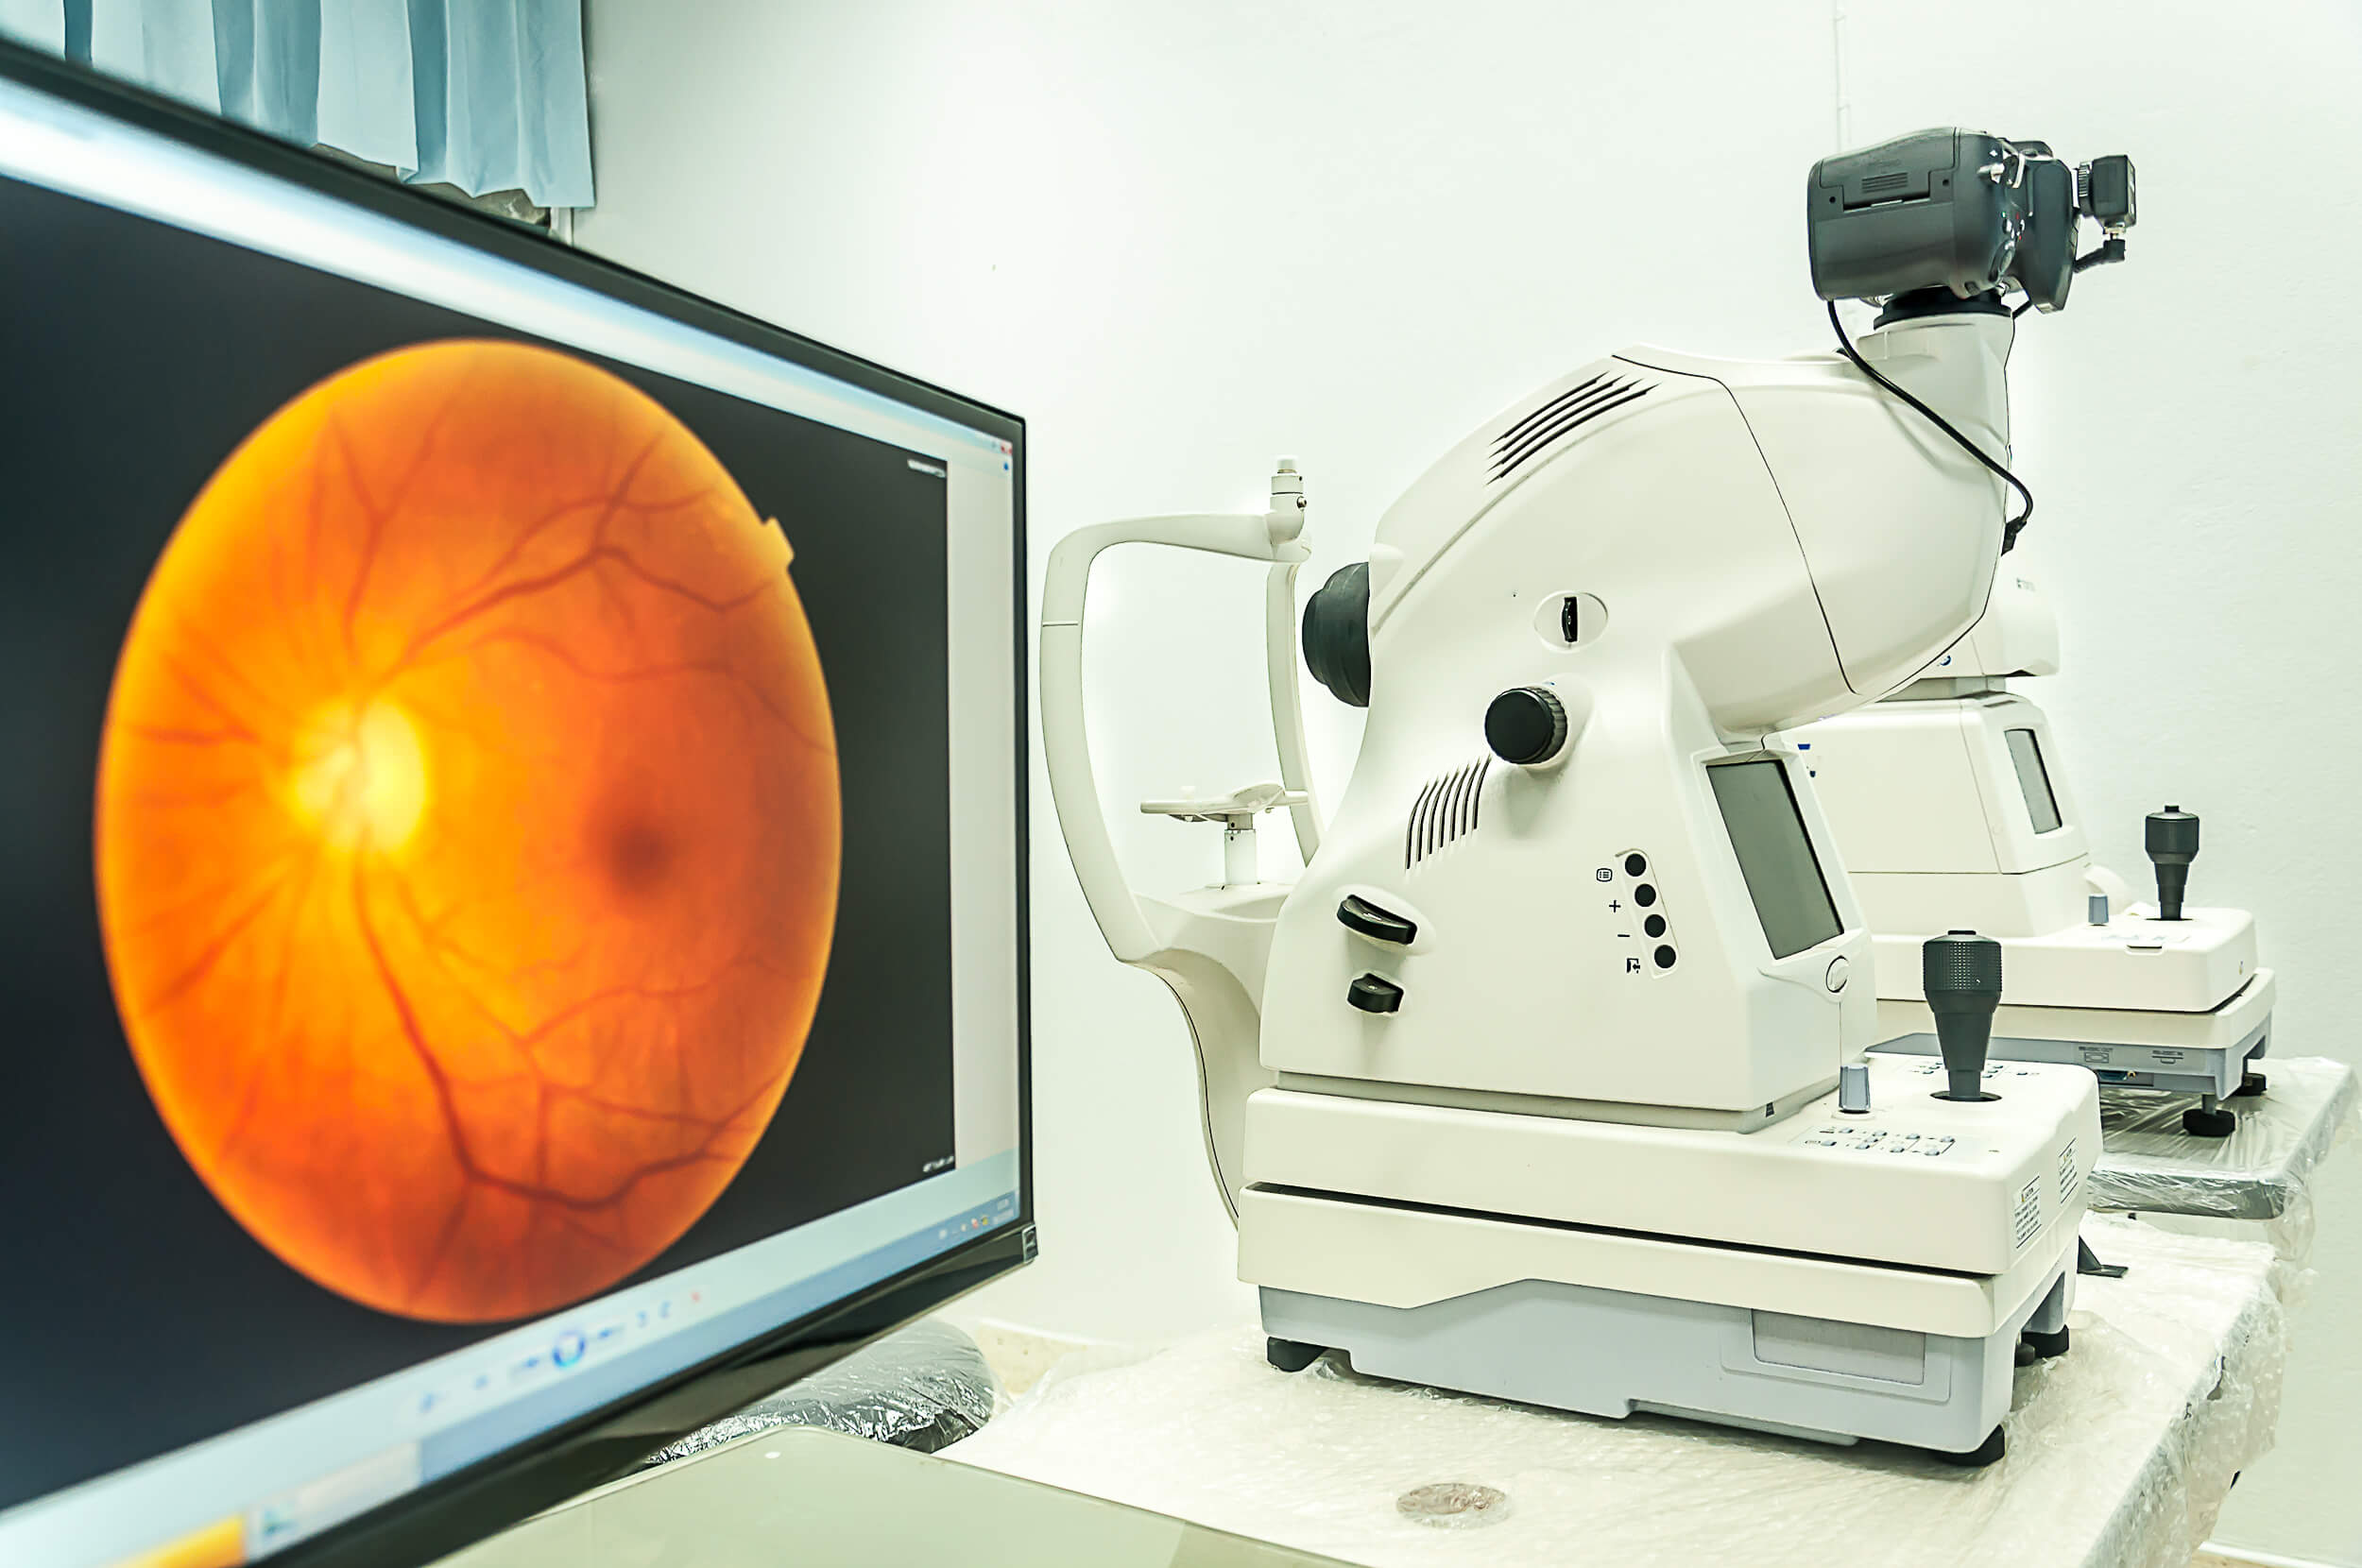 What is diabetic eye screening?